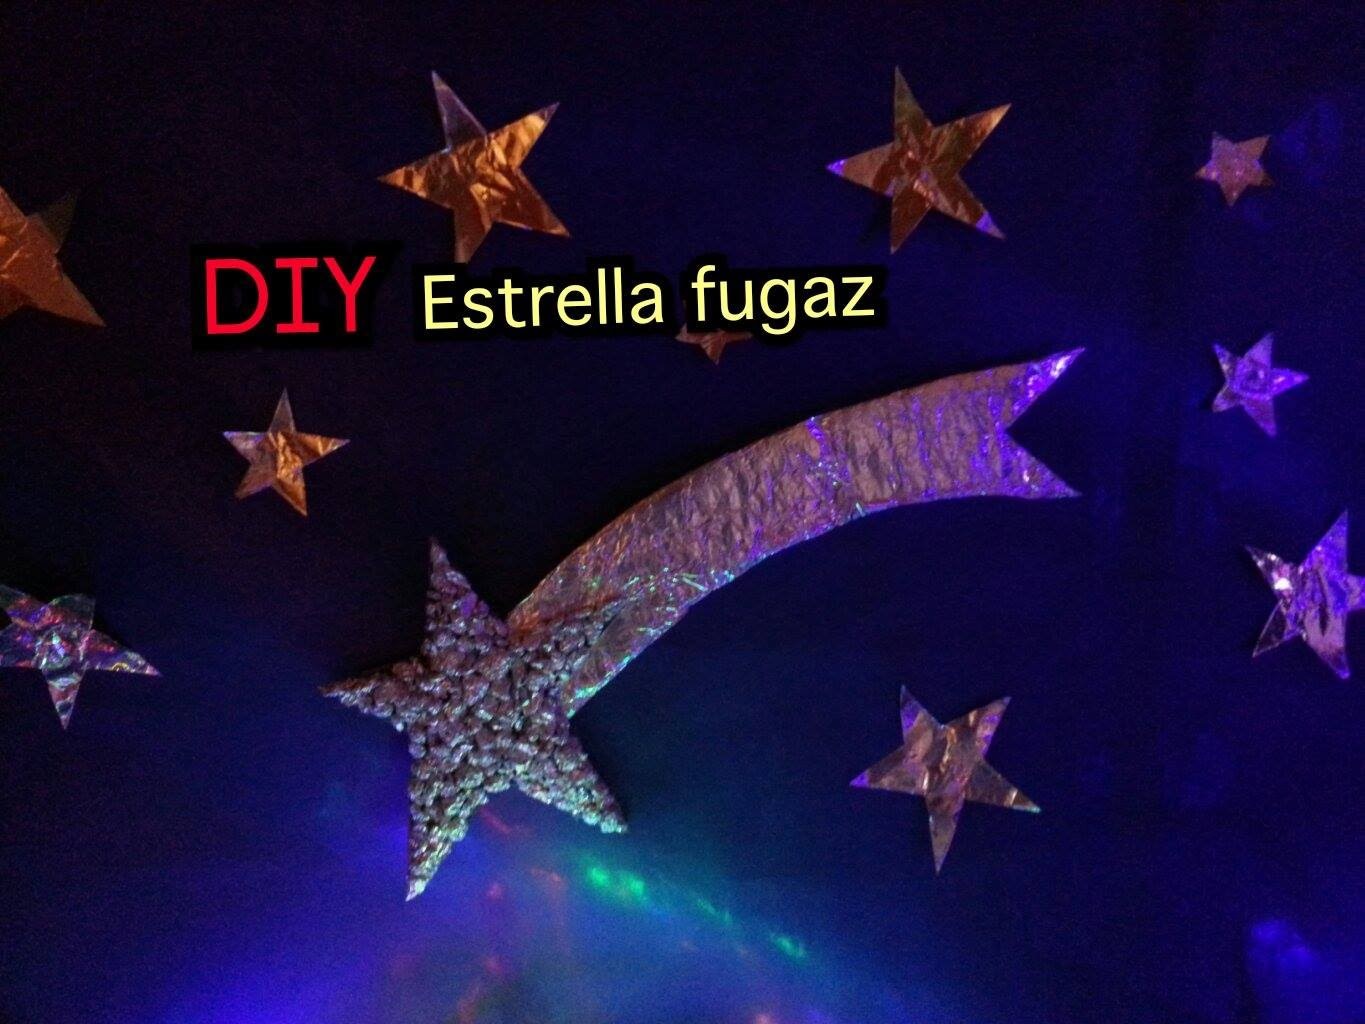 Diy estrella fugaz by mi niña (felics fiestas)